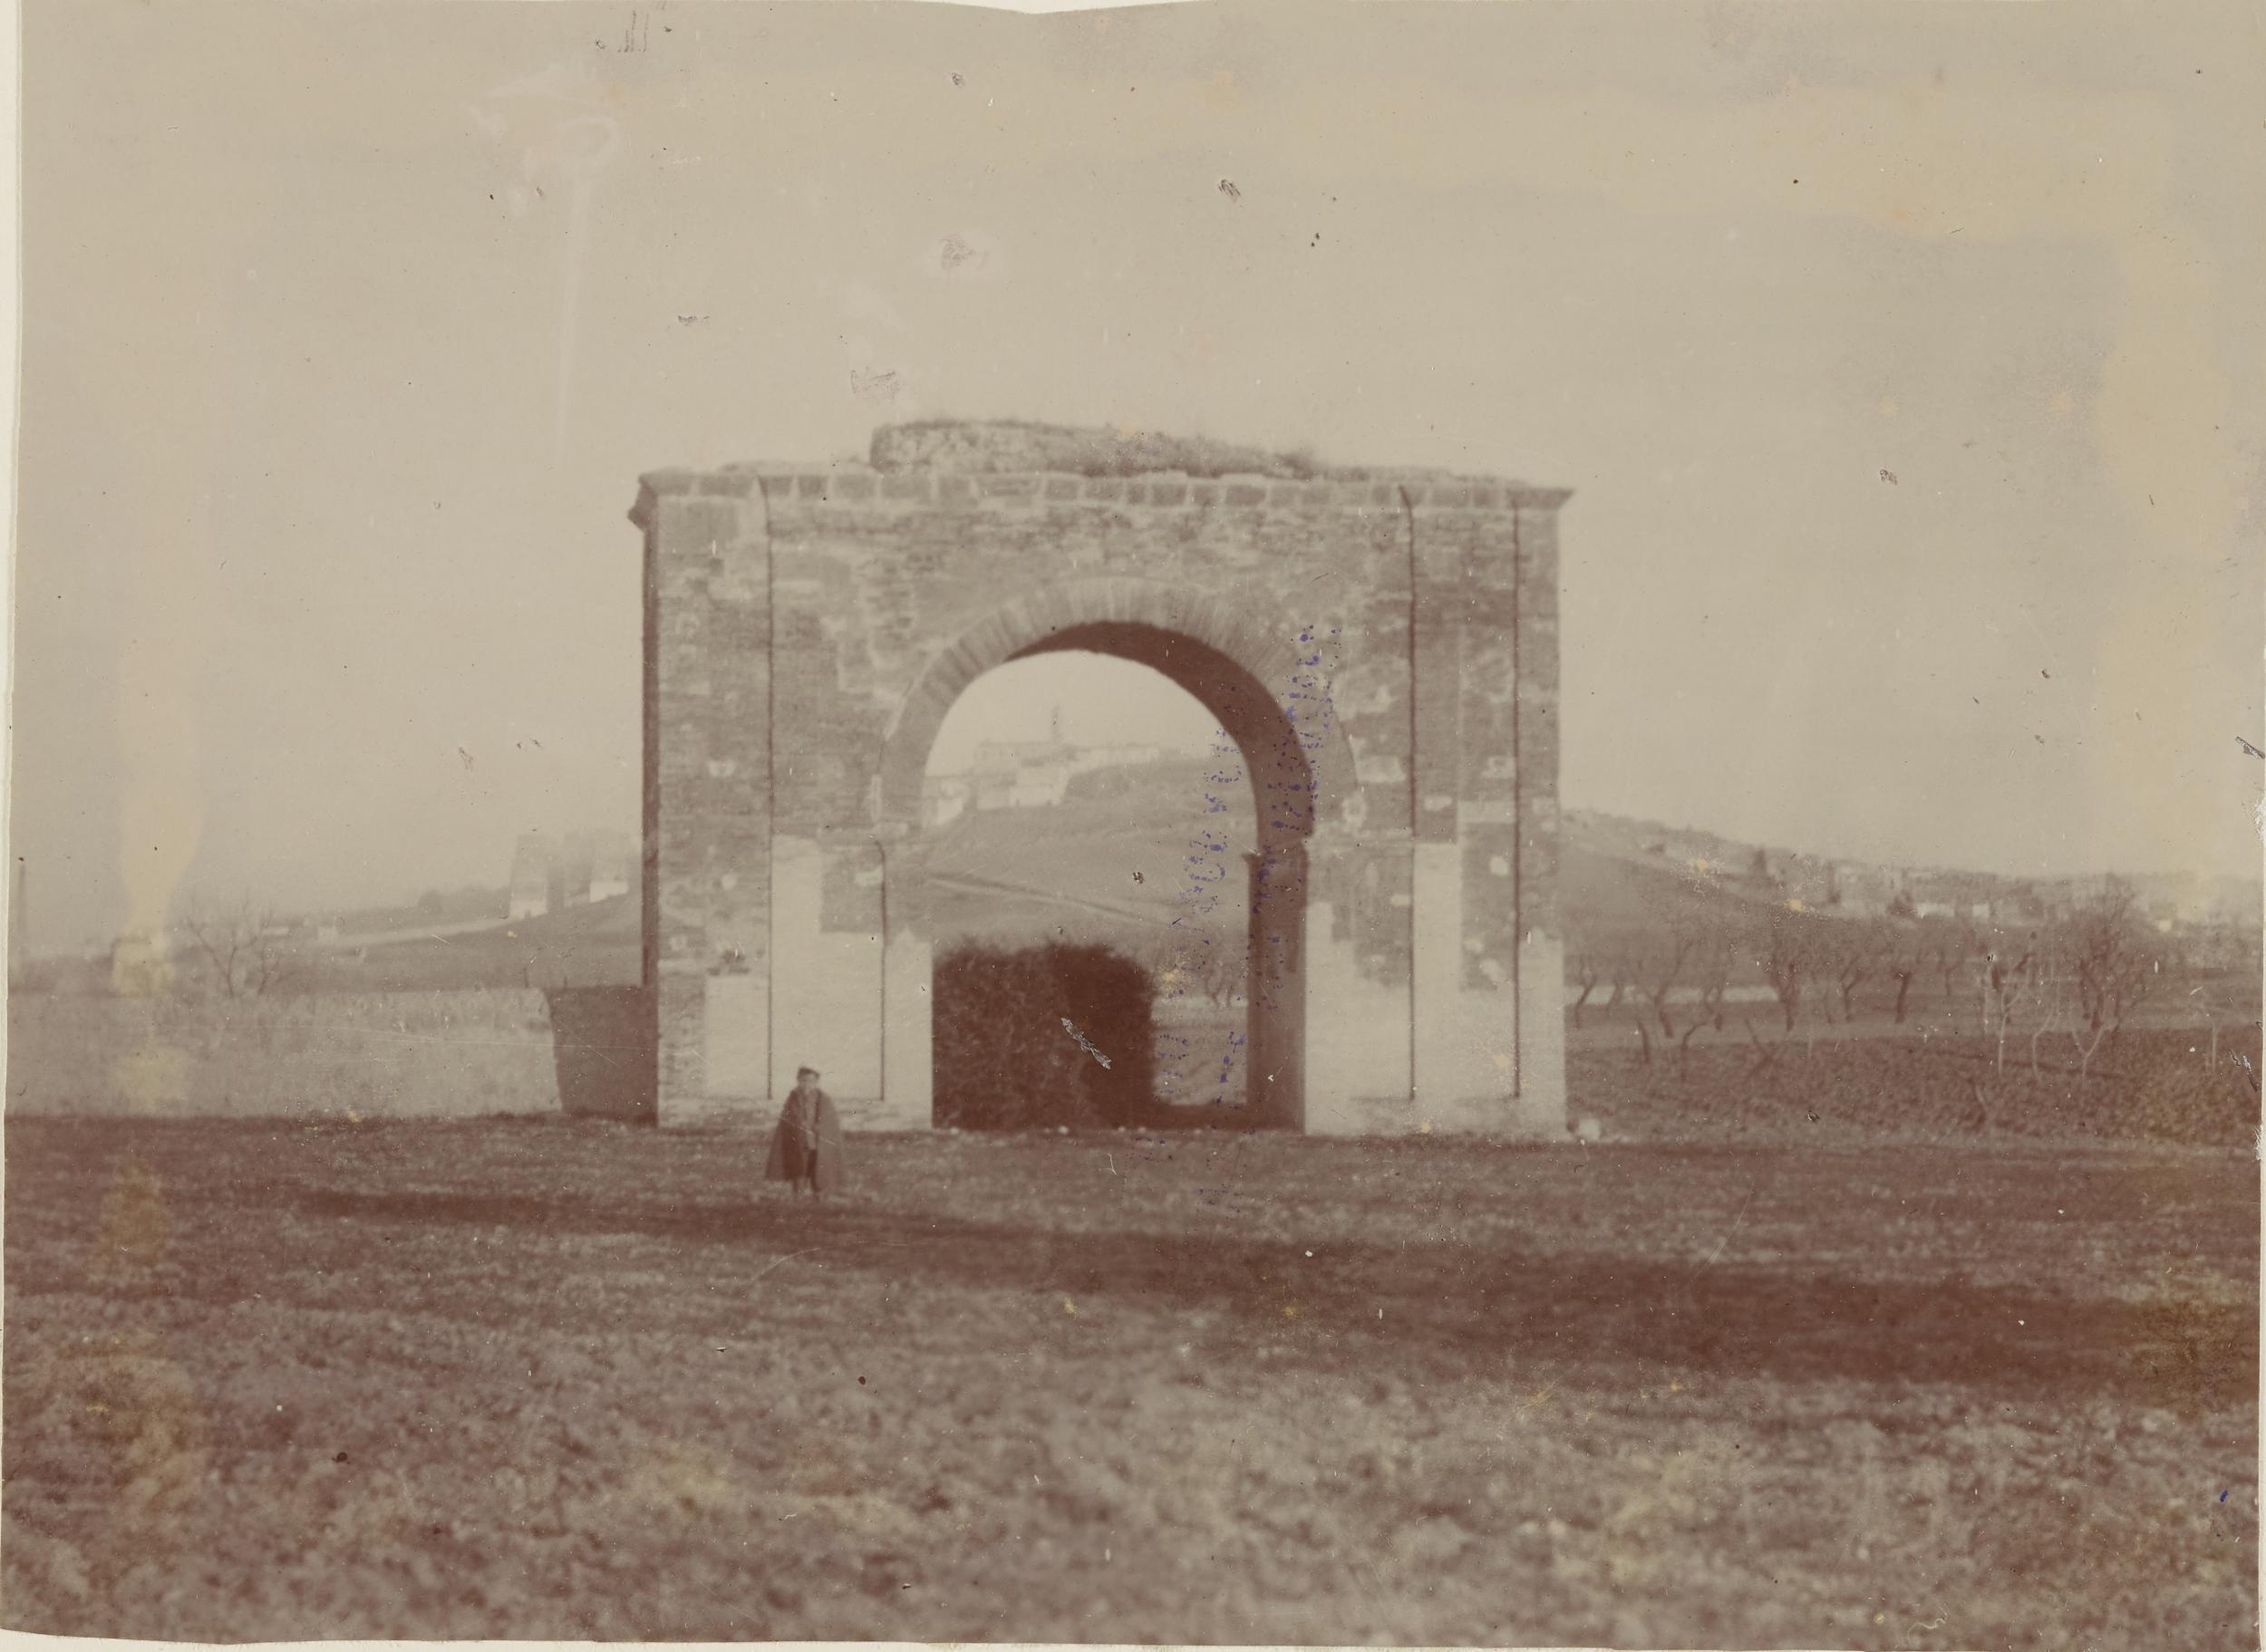 Fotografo non identificato, Canosa di Puglia - Arco romano detta Porta Varrone, 1891-1910, aristotipo, MPI143582